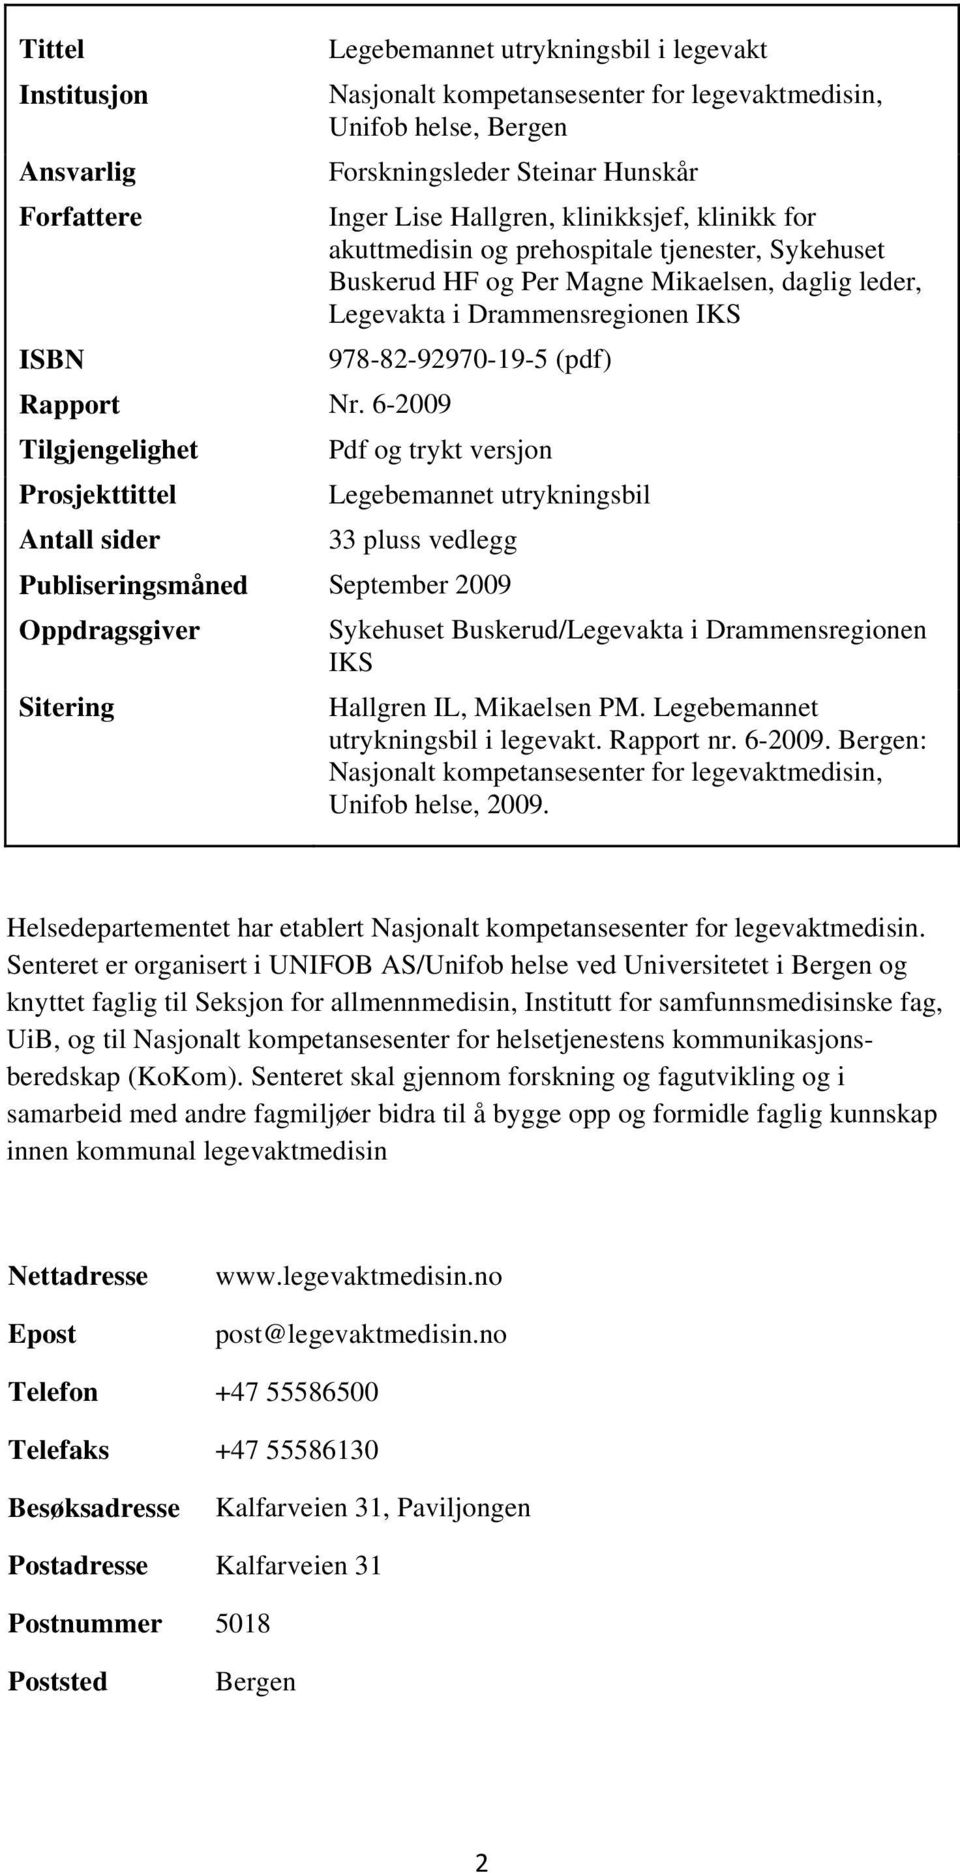 Lise Hallgren, klinikksjef, klinikk for akuttmedisin og prehospitale tjenester, Sykehuset Buskerud HF og Per Magne Mikaelsen, daglig leder, Legevakta i Drammensregionen IKS 978-82-92970-19-5 (pdf)